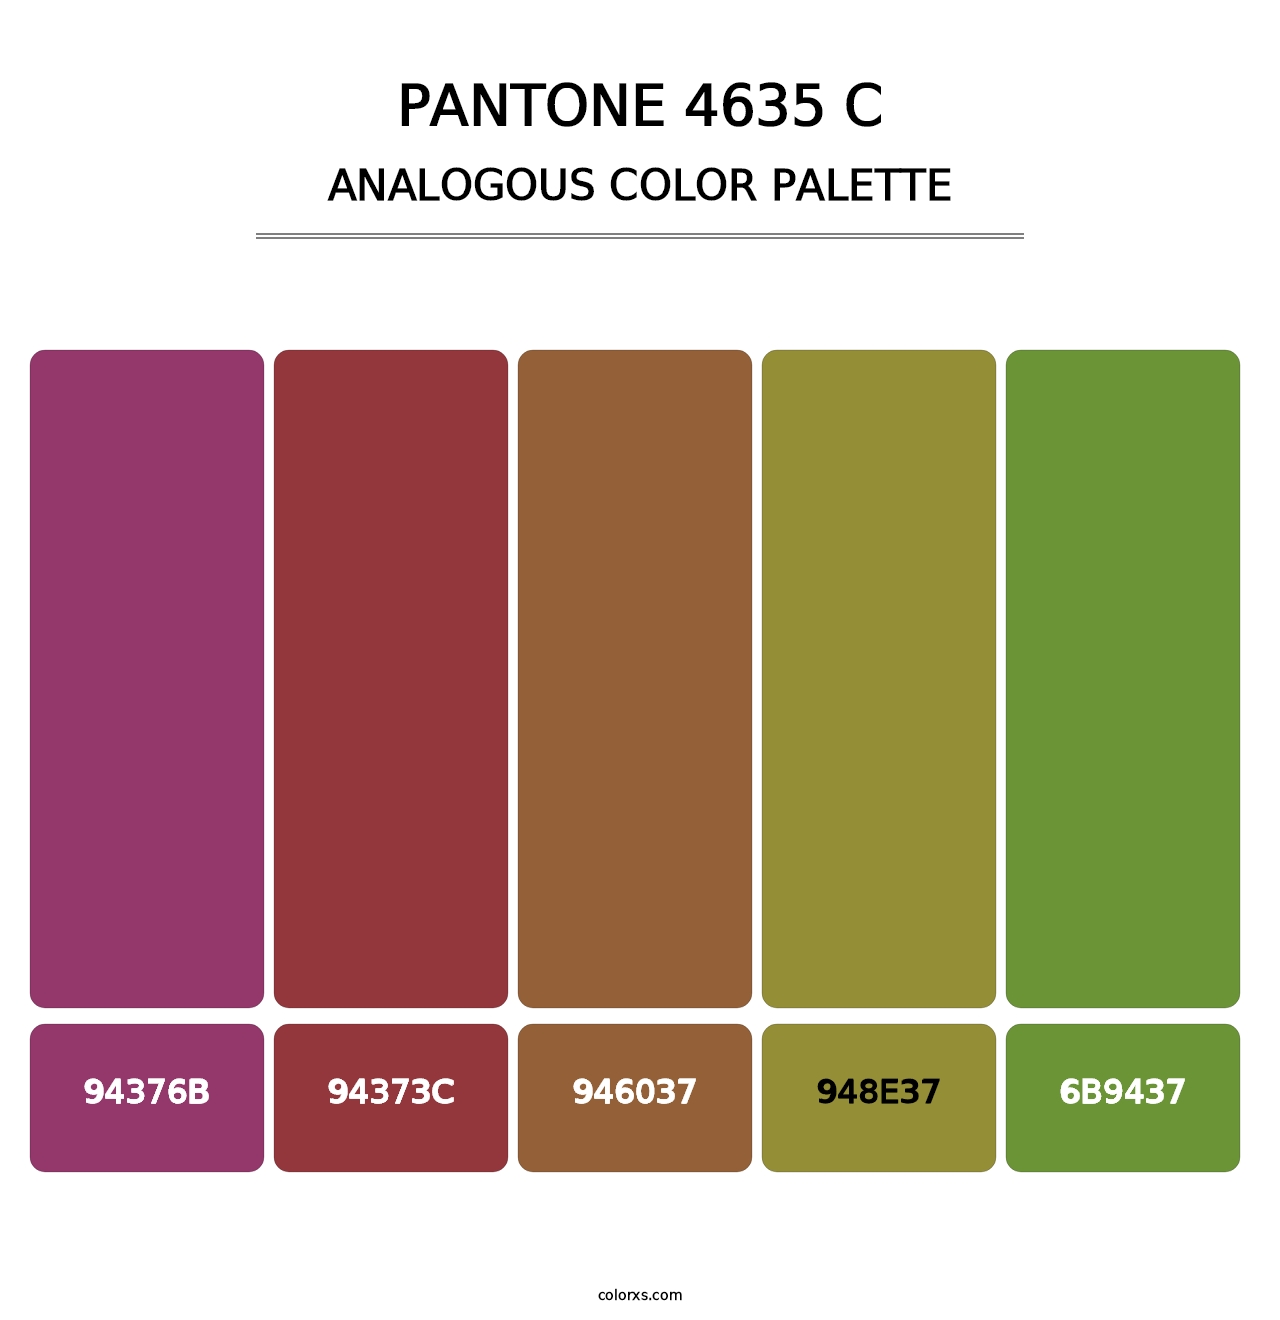 PANTONE 4635 C - Analogous Color Palette